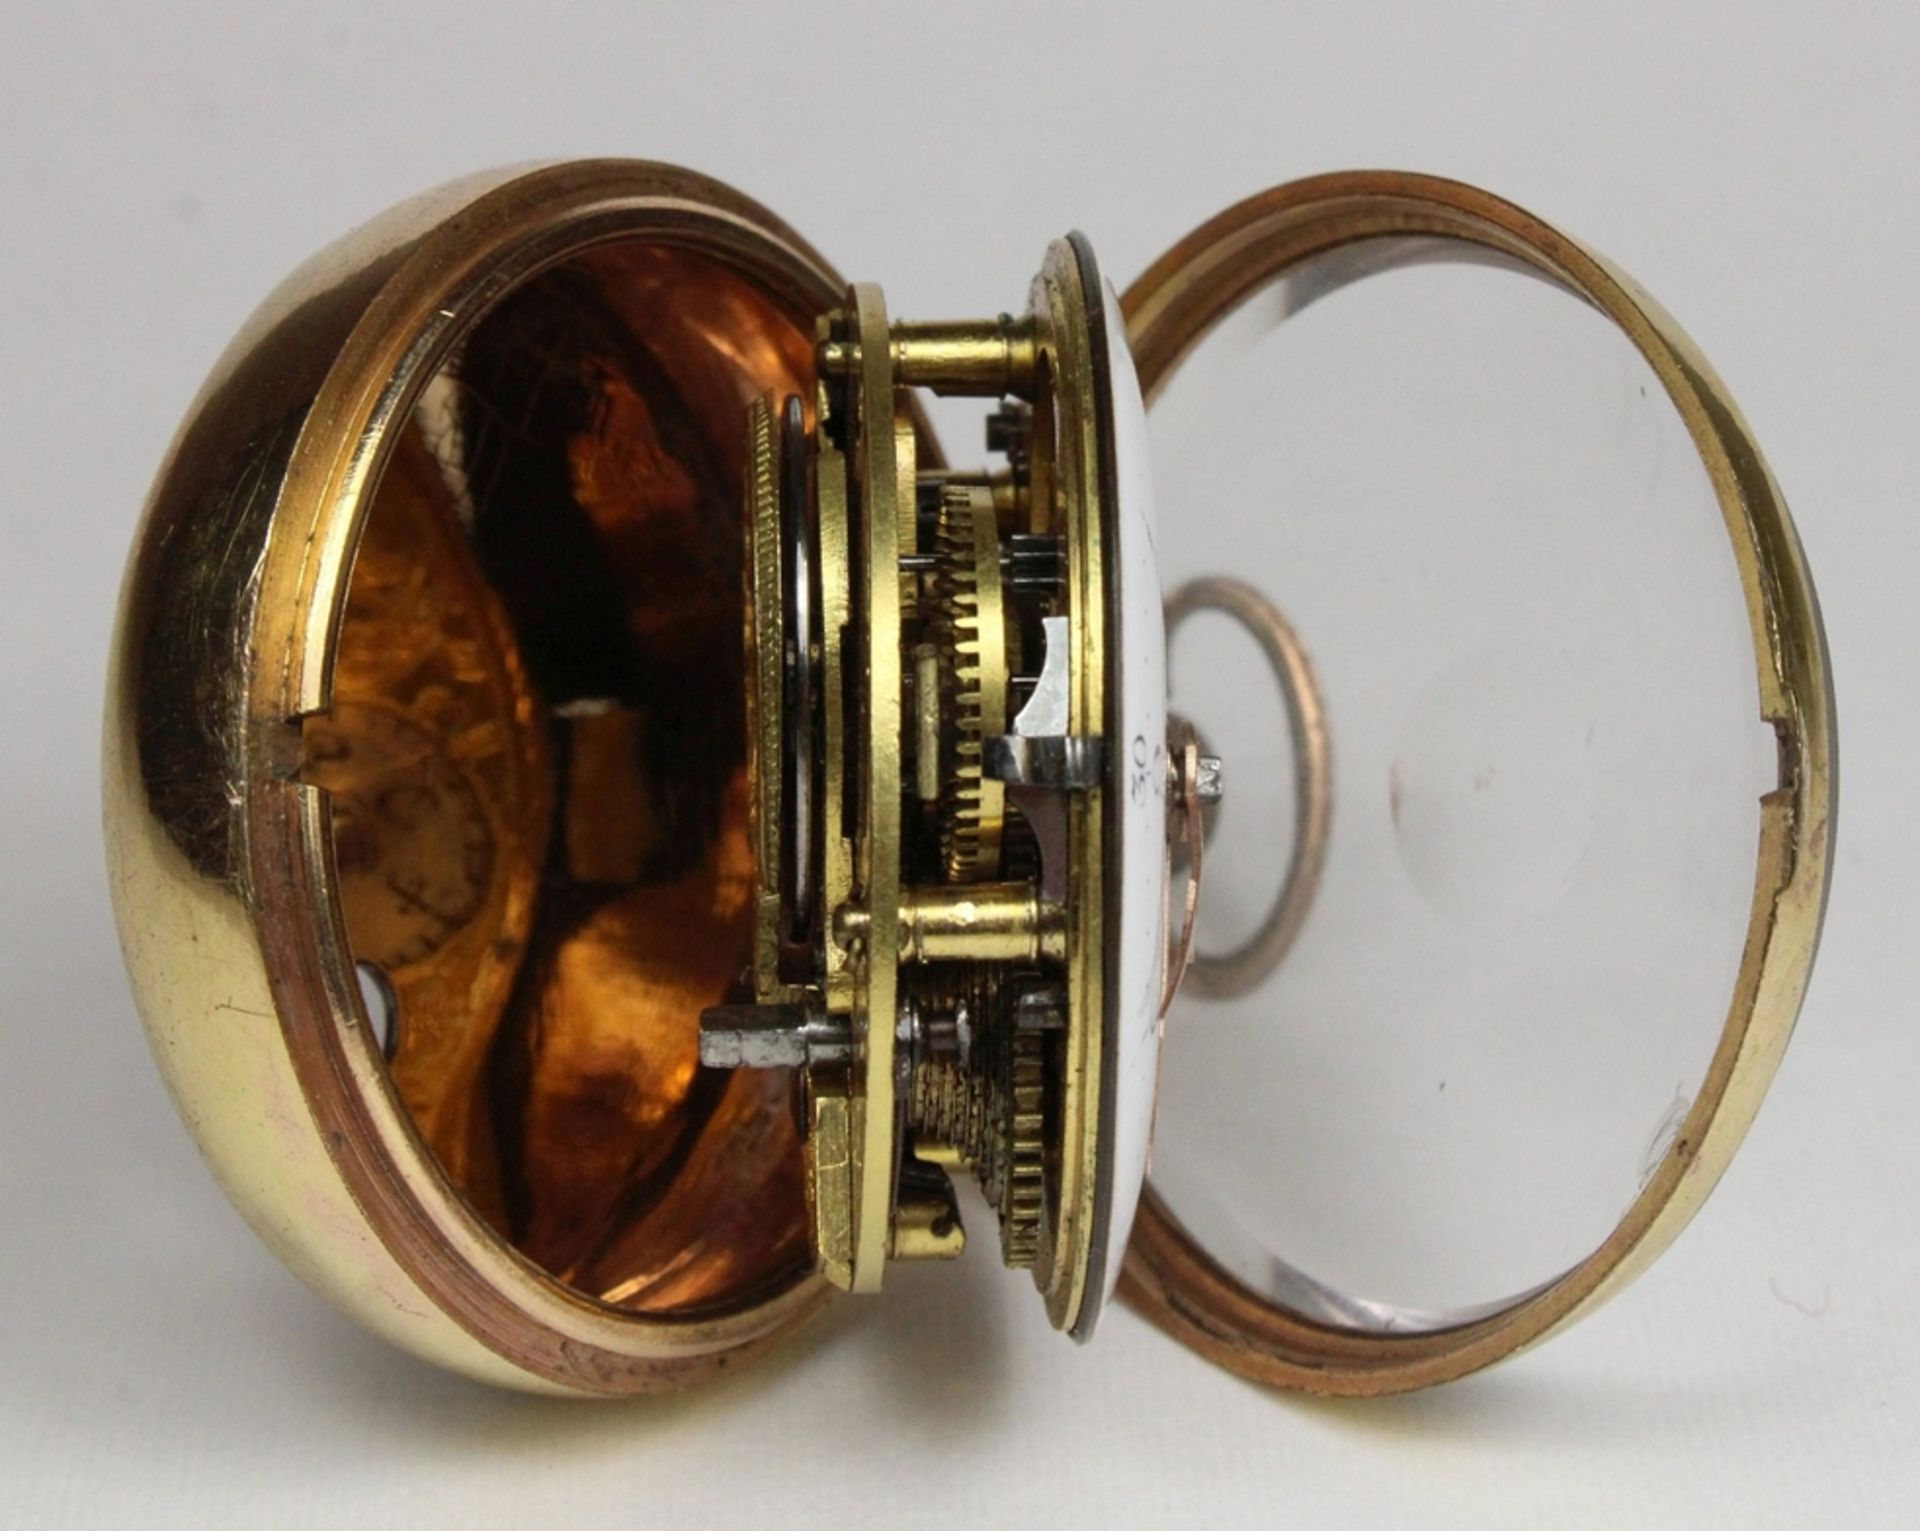 Vergoldete Spindeltaschenuhr mit bemalter Horngehäuse, um 1800-1820, Uhrmacher: Thomas Wilson, Lon - Bild 4 aus 4